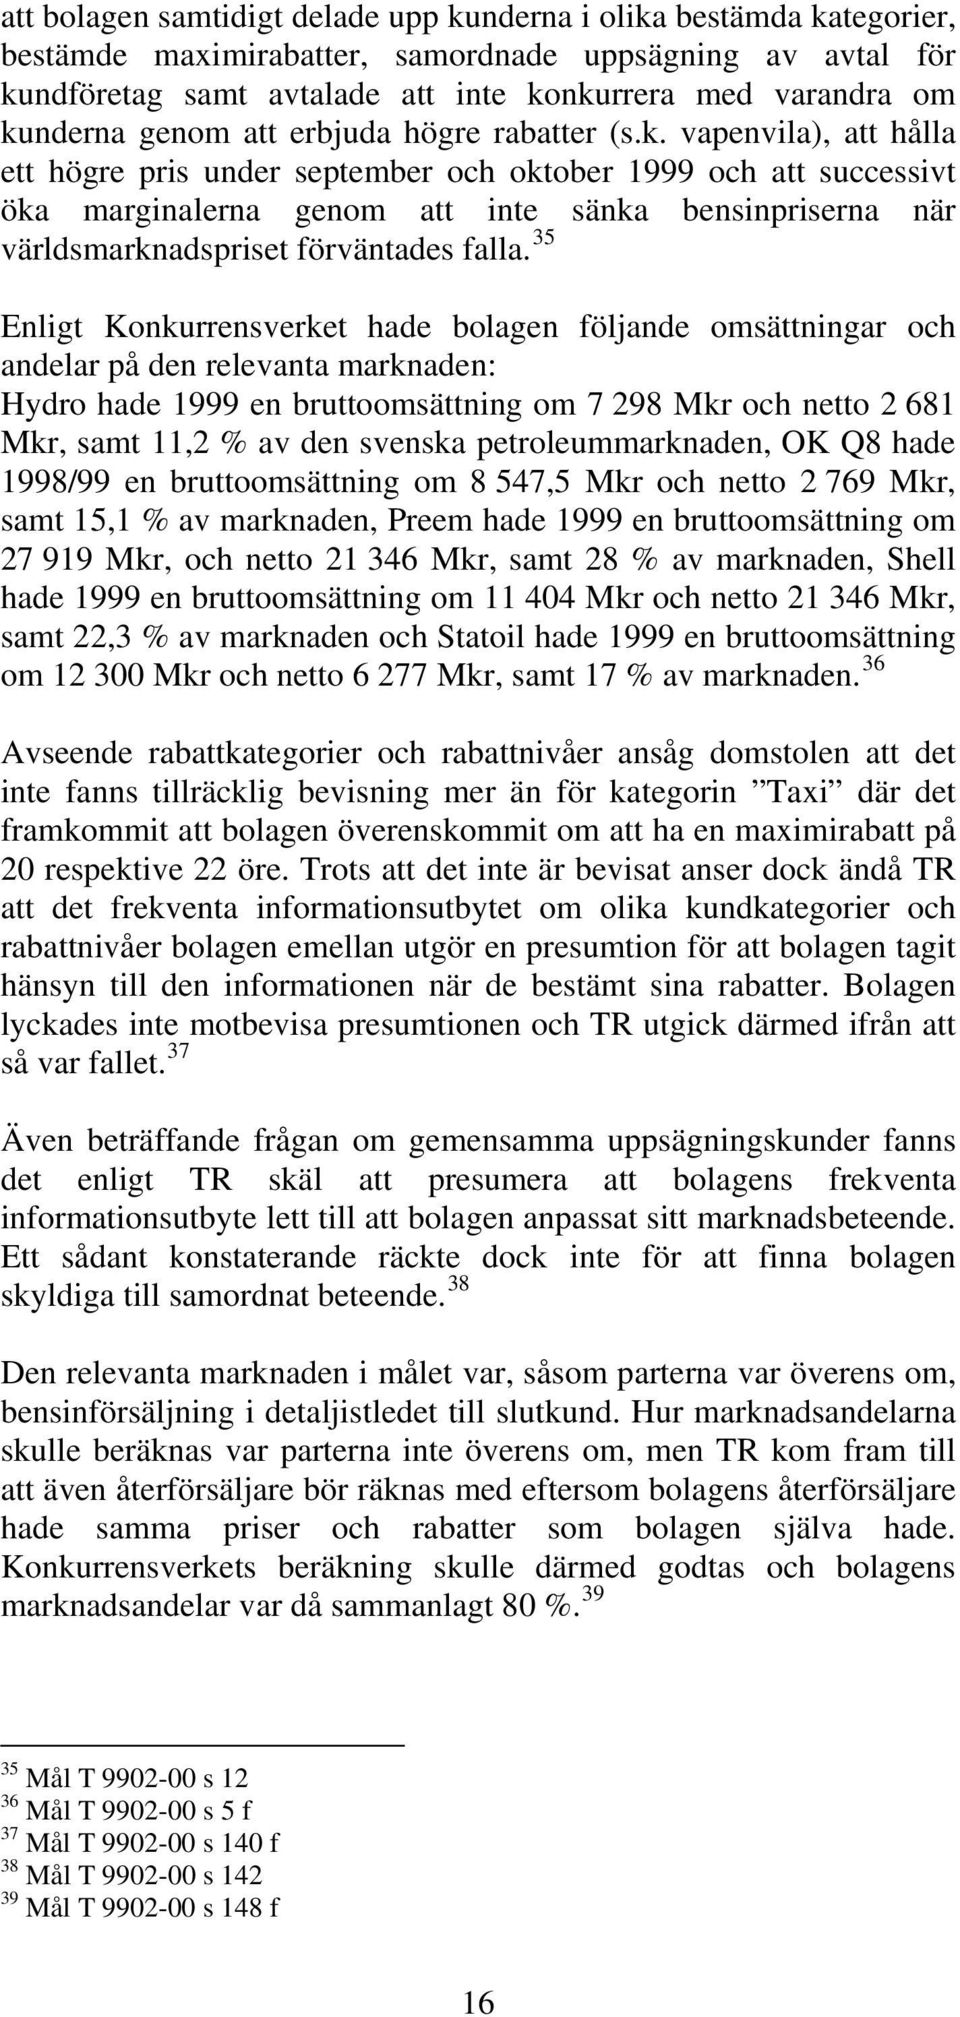 35 Enligt Konkurrensverket hade bolagen följande omsättningar och andelar på den relevanta marknaden: Hydro hade 1999 en bruttoomsättning om 7 298 Mkr och netto 2 681 Mkr, samt 11,2 % av den svenska